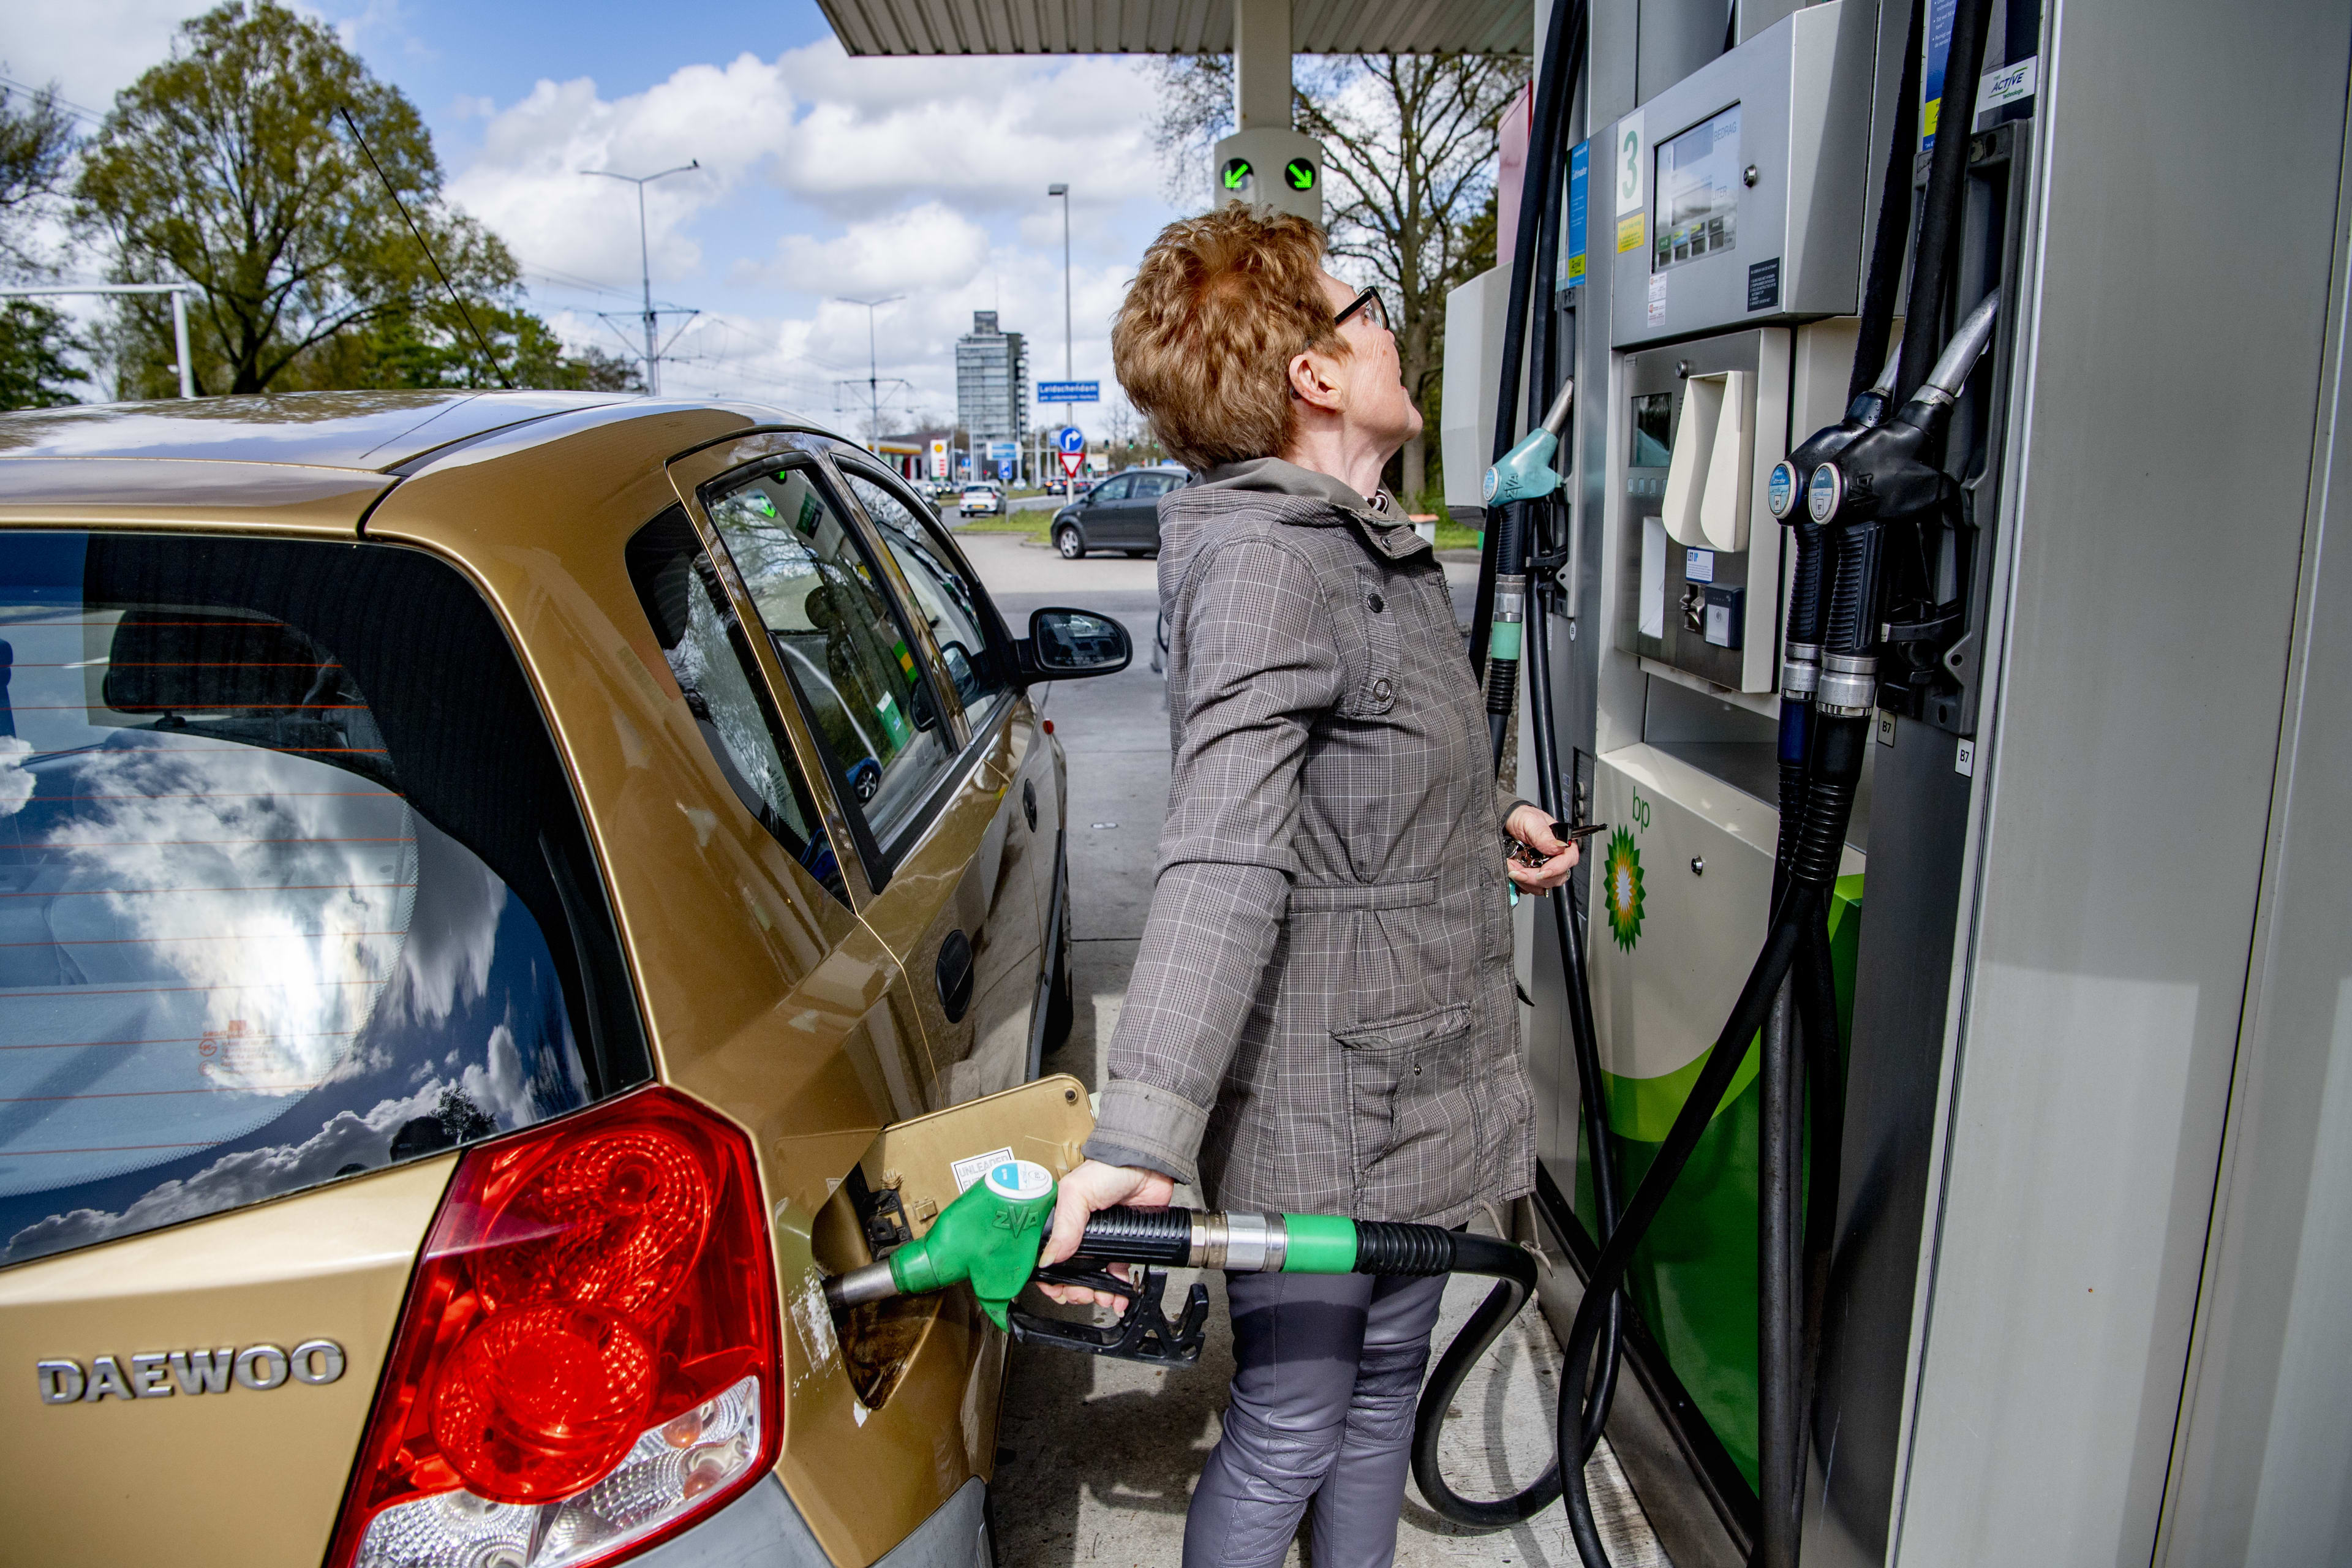 Benzineprijzen blijven stijgen ondanks accijnsverlaging: 'Zullen hieraan moeten wennen'